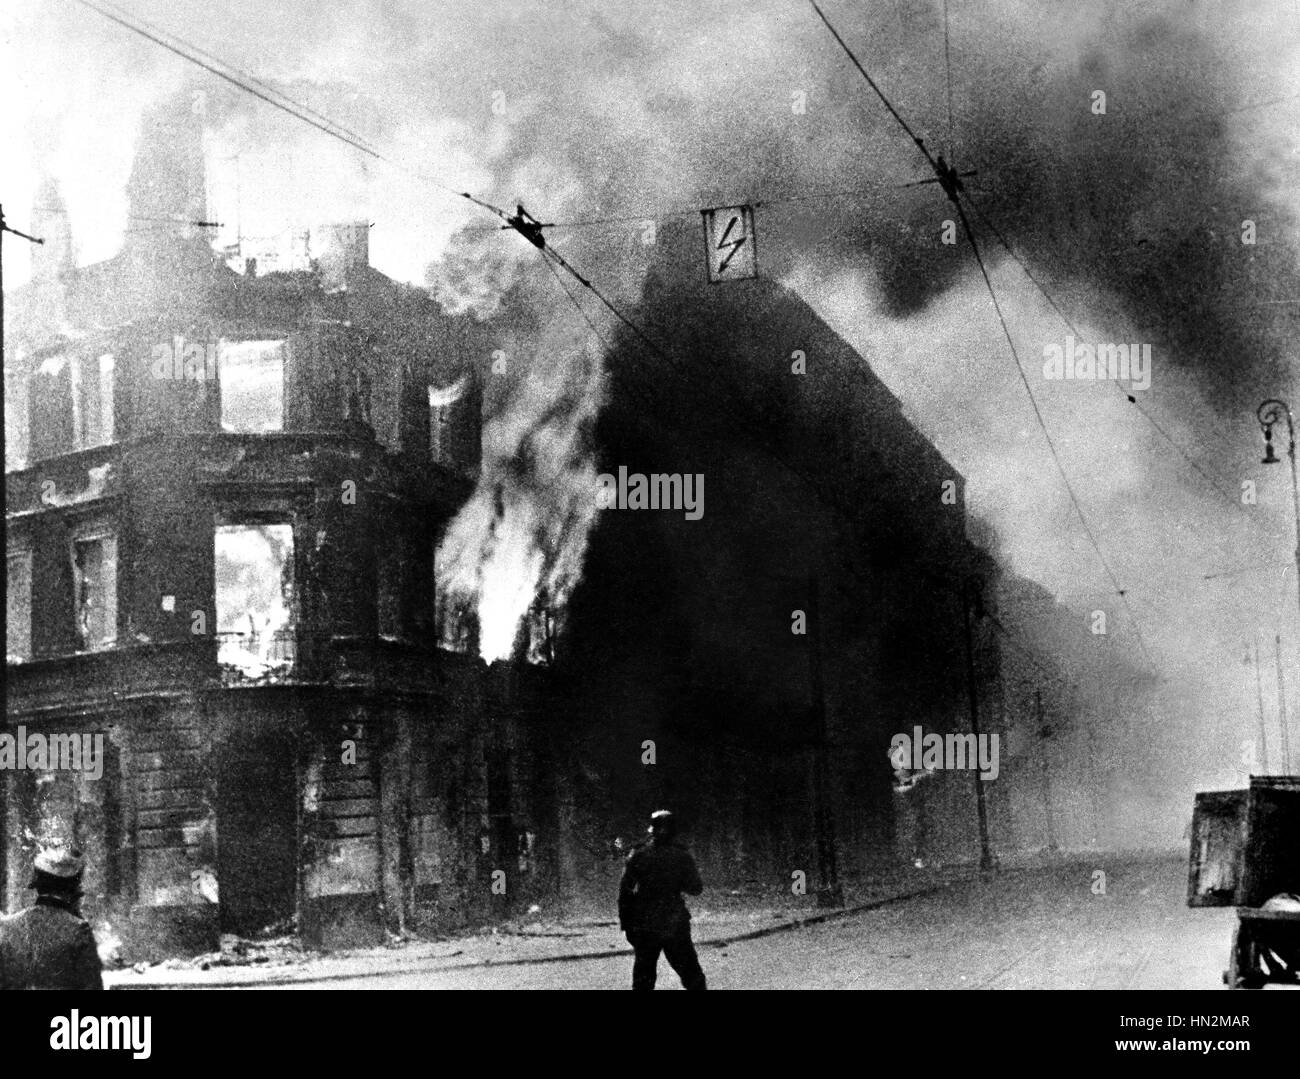 Ghetto di Varsavia: edifici di fuoco durante l'insurrezione. 1943 la Polonia, la seconda guerra mondiale la guerra Centre de documentation juive Foto Stock